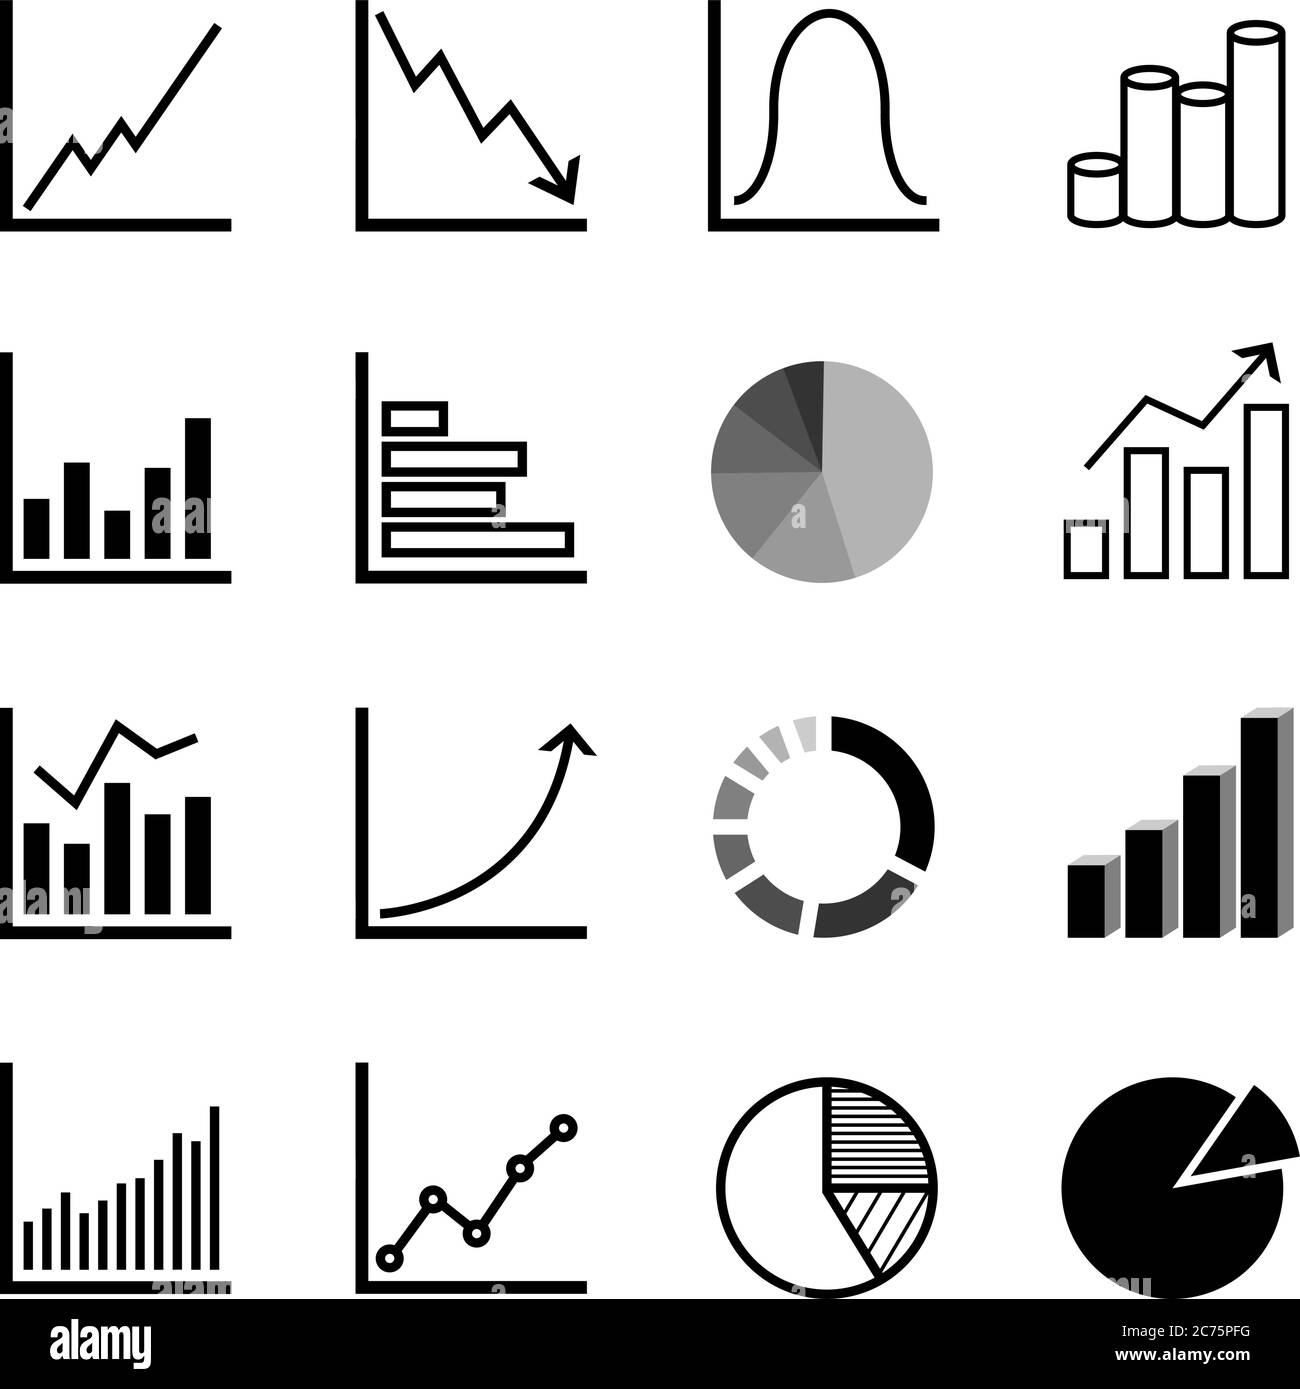 gráfico y diagrama financiero y empresarial ilustración vectorial de conjunto de iconos Ilustración del Vector